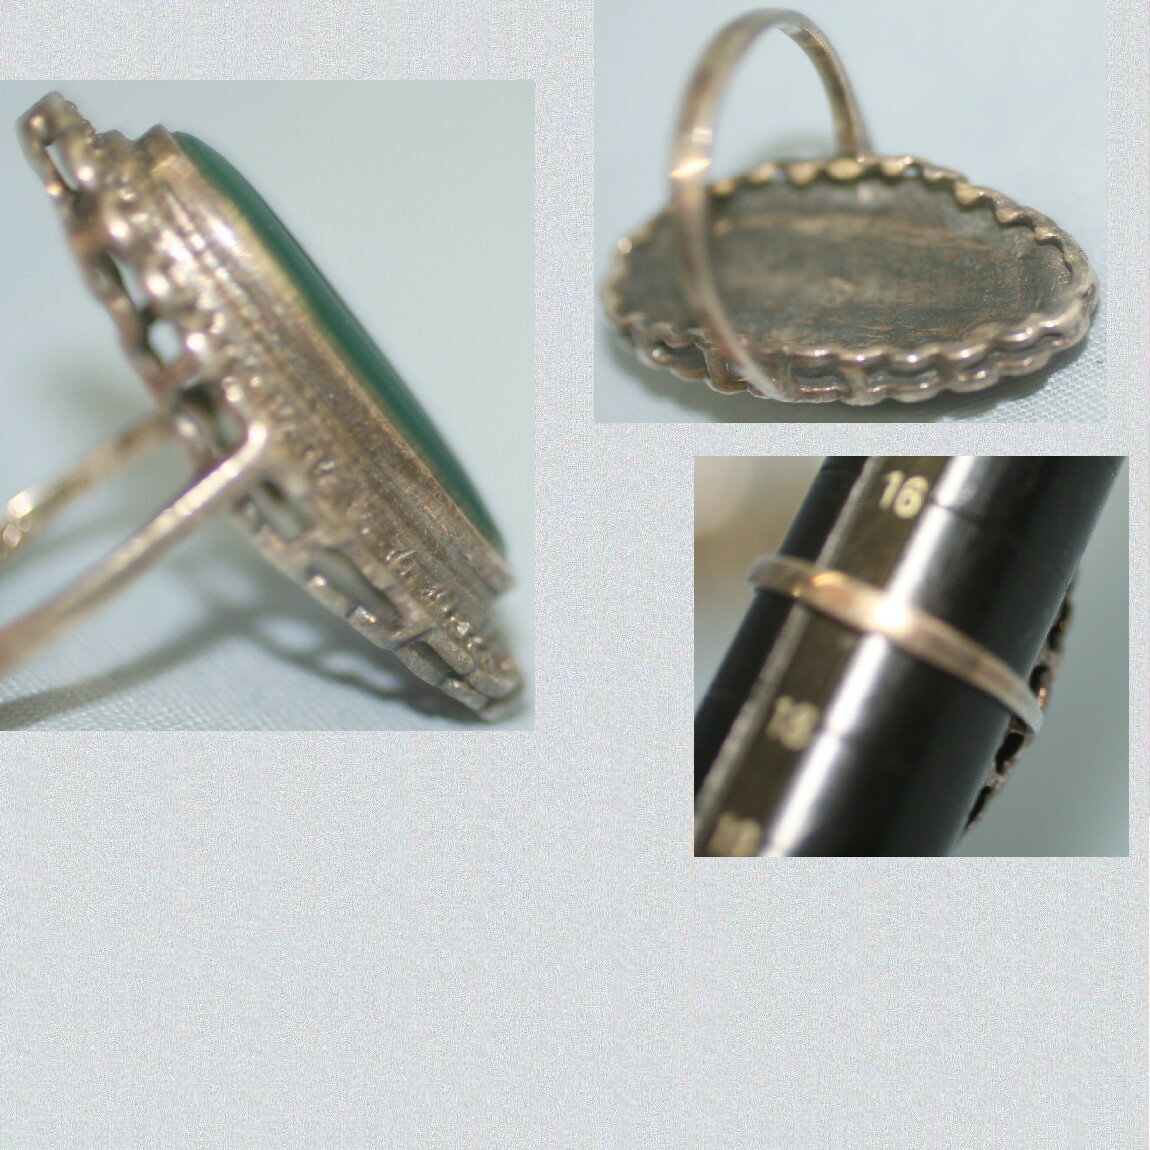 【中古】本物美品SV925いぶし銀素材にヒスイの様な深緑色指輪重さ9,1gサイズ17号 〇B9-78-11